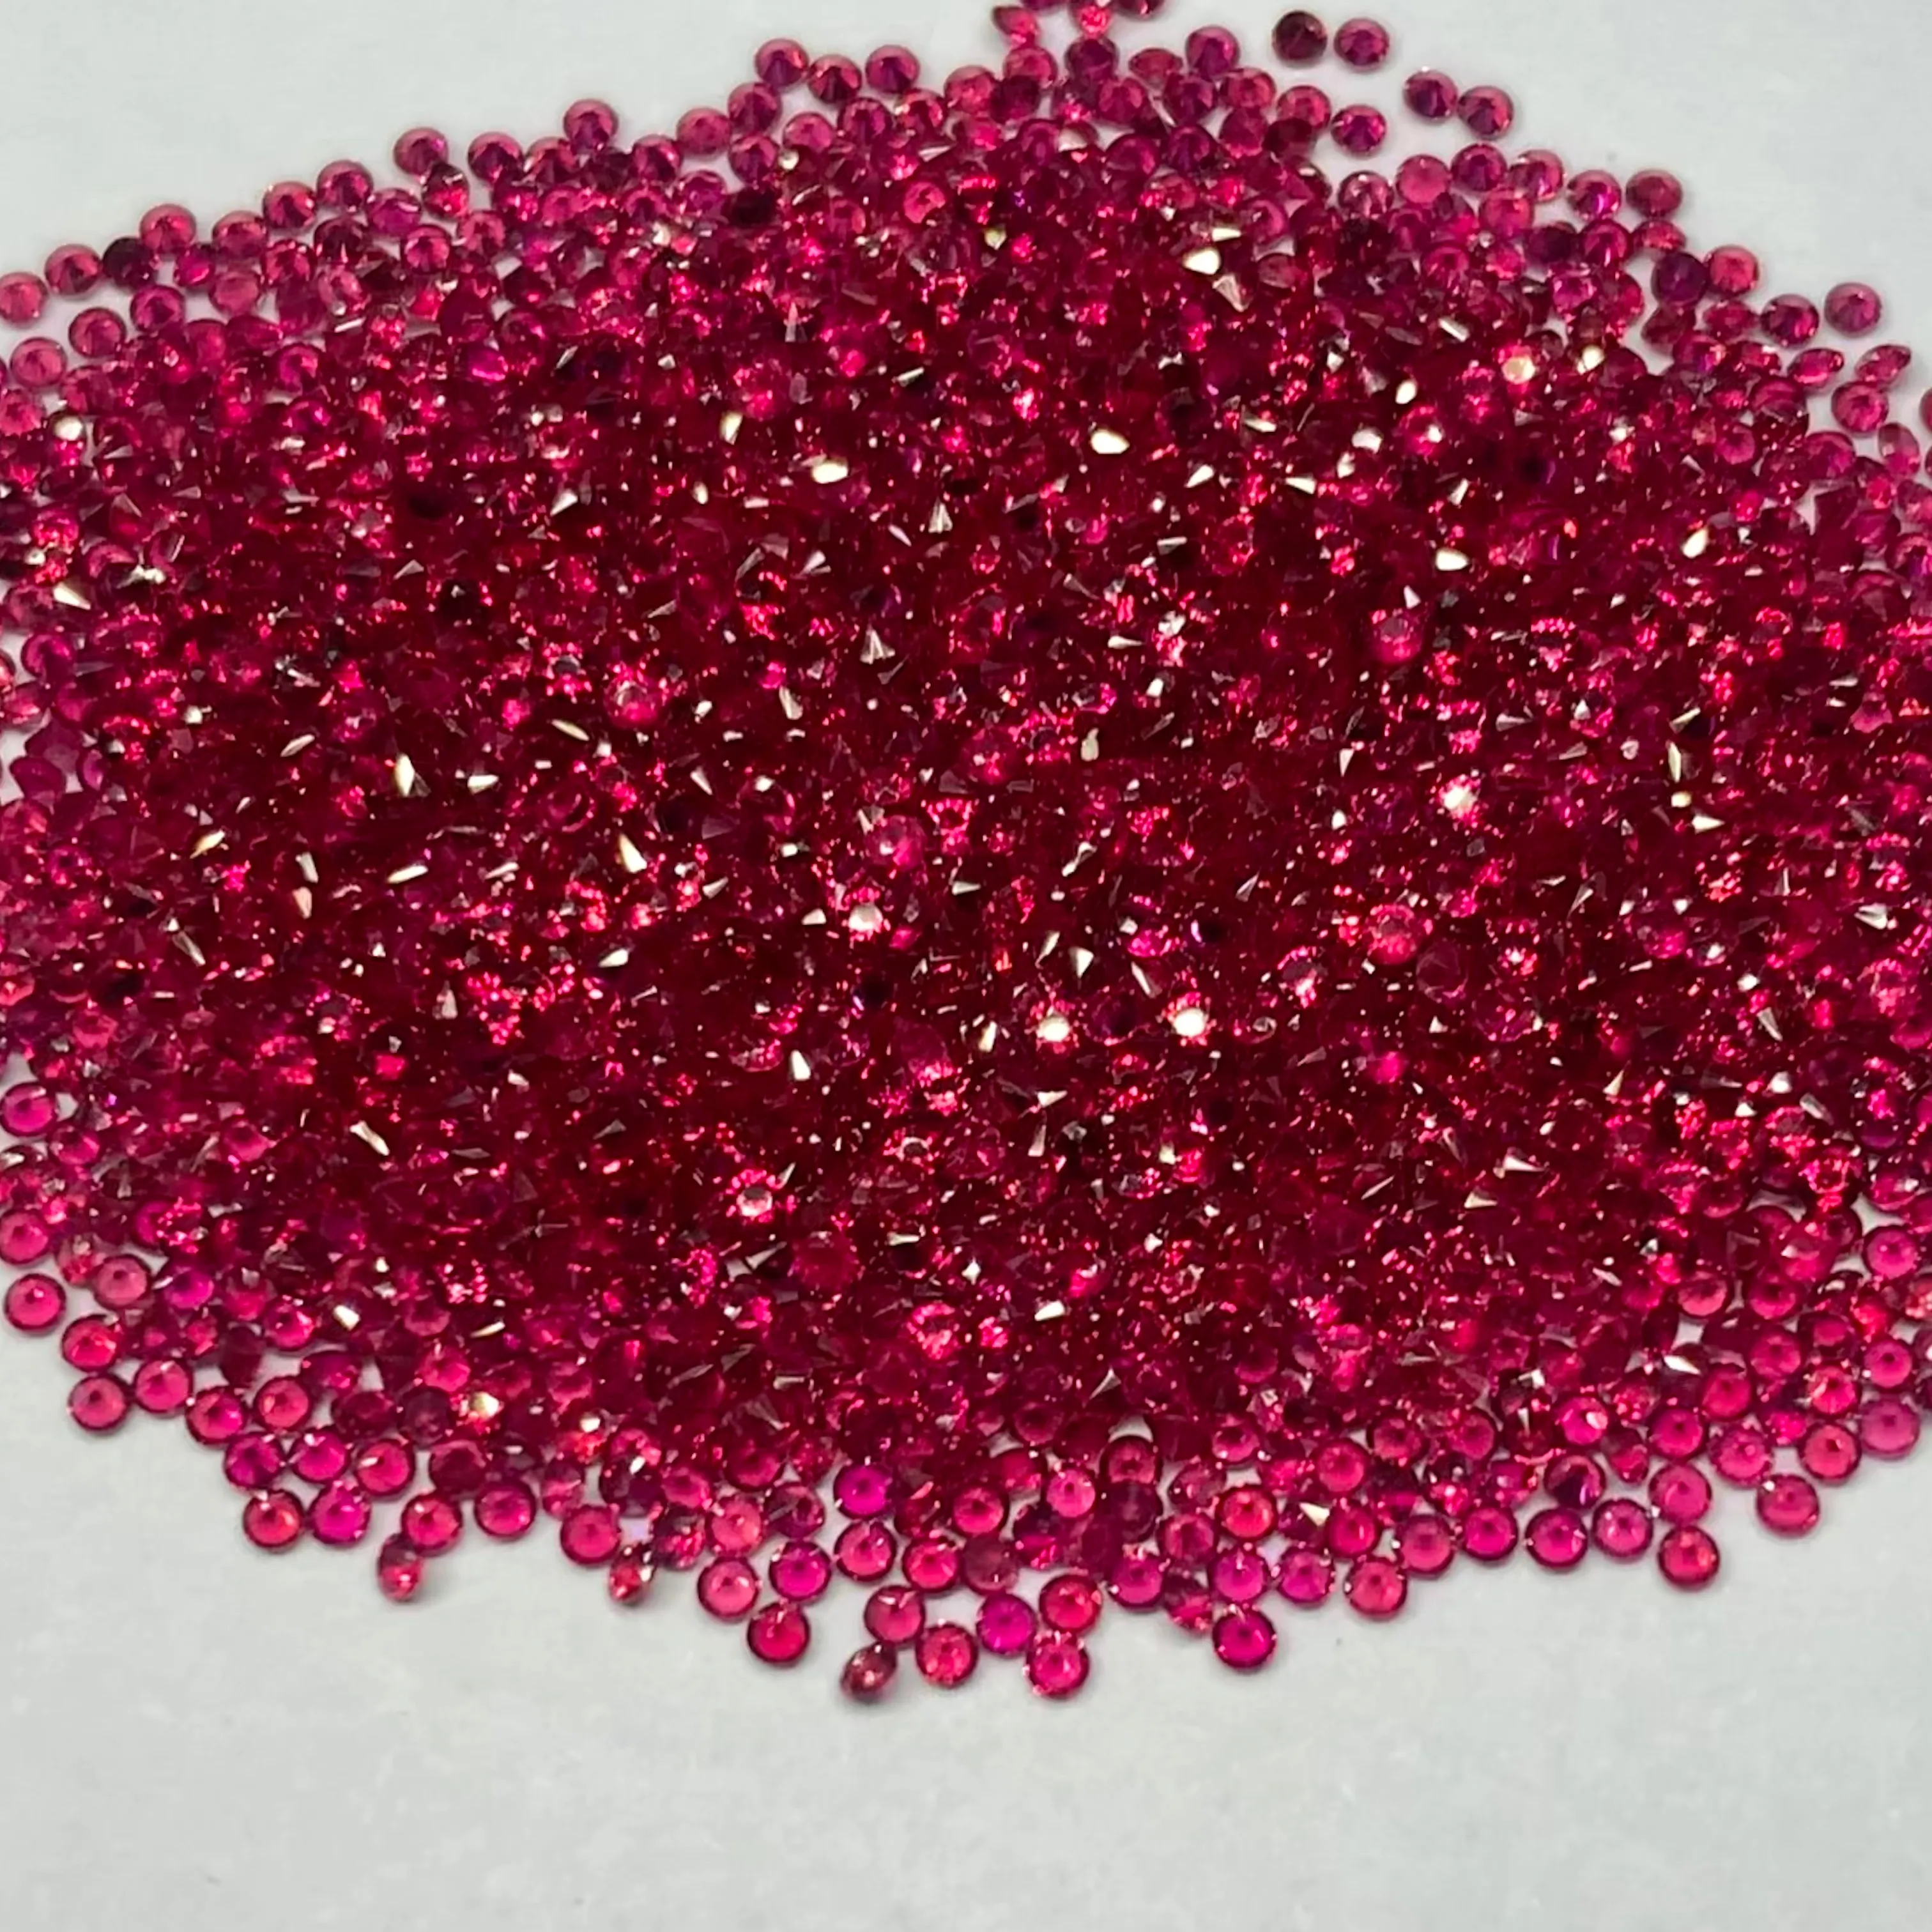 Pietra preziosa rubino rosso rubino naturale da 1mm taglio diamante brillante rotondo pietra rubino naturale genuina di alta qualità rosa rosso grezzo grezzo